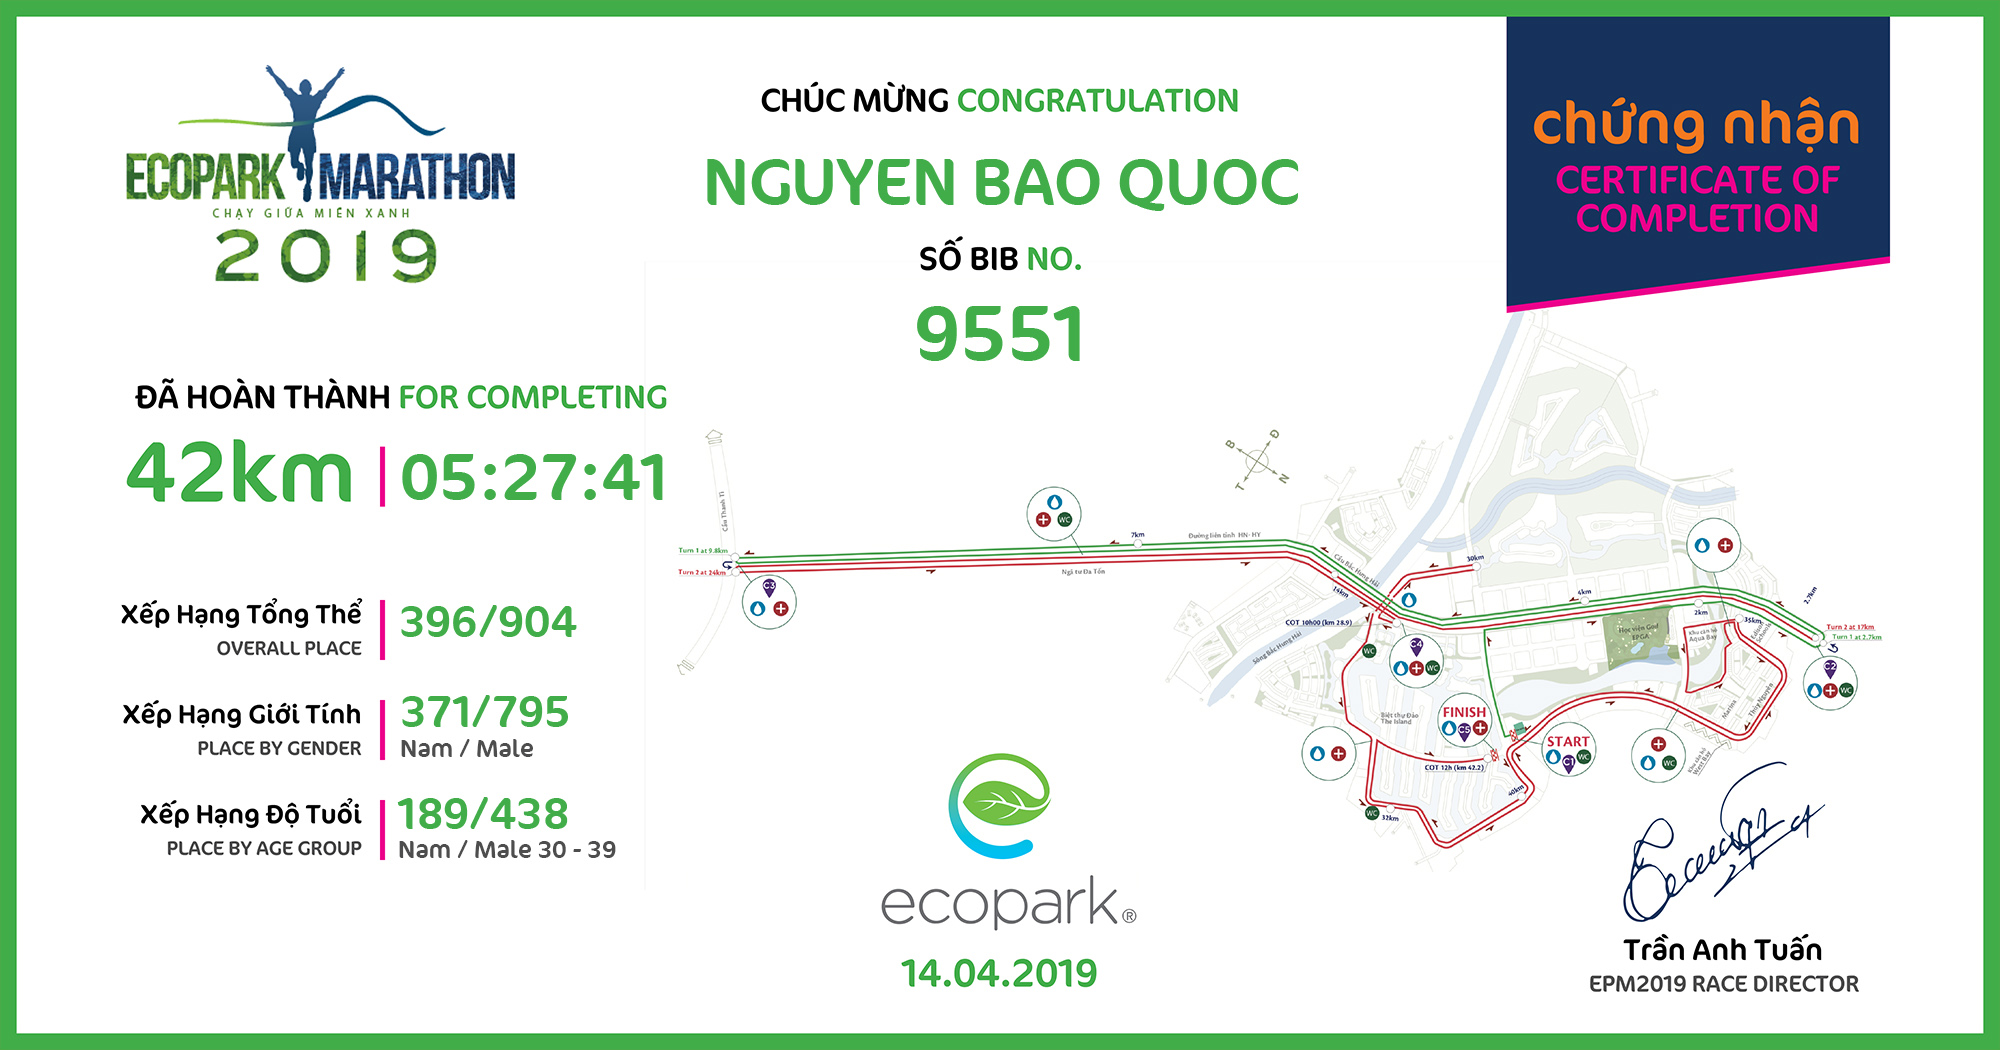 9551 - Nguyen Bao Quoc